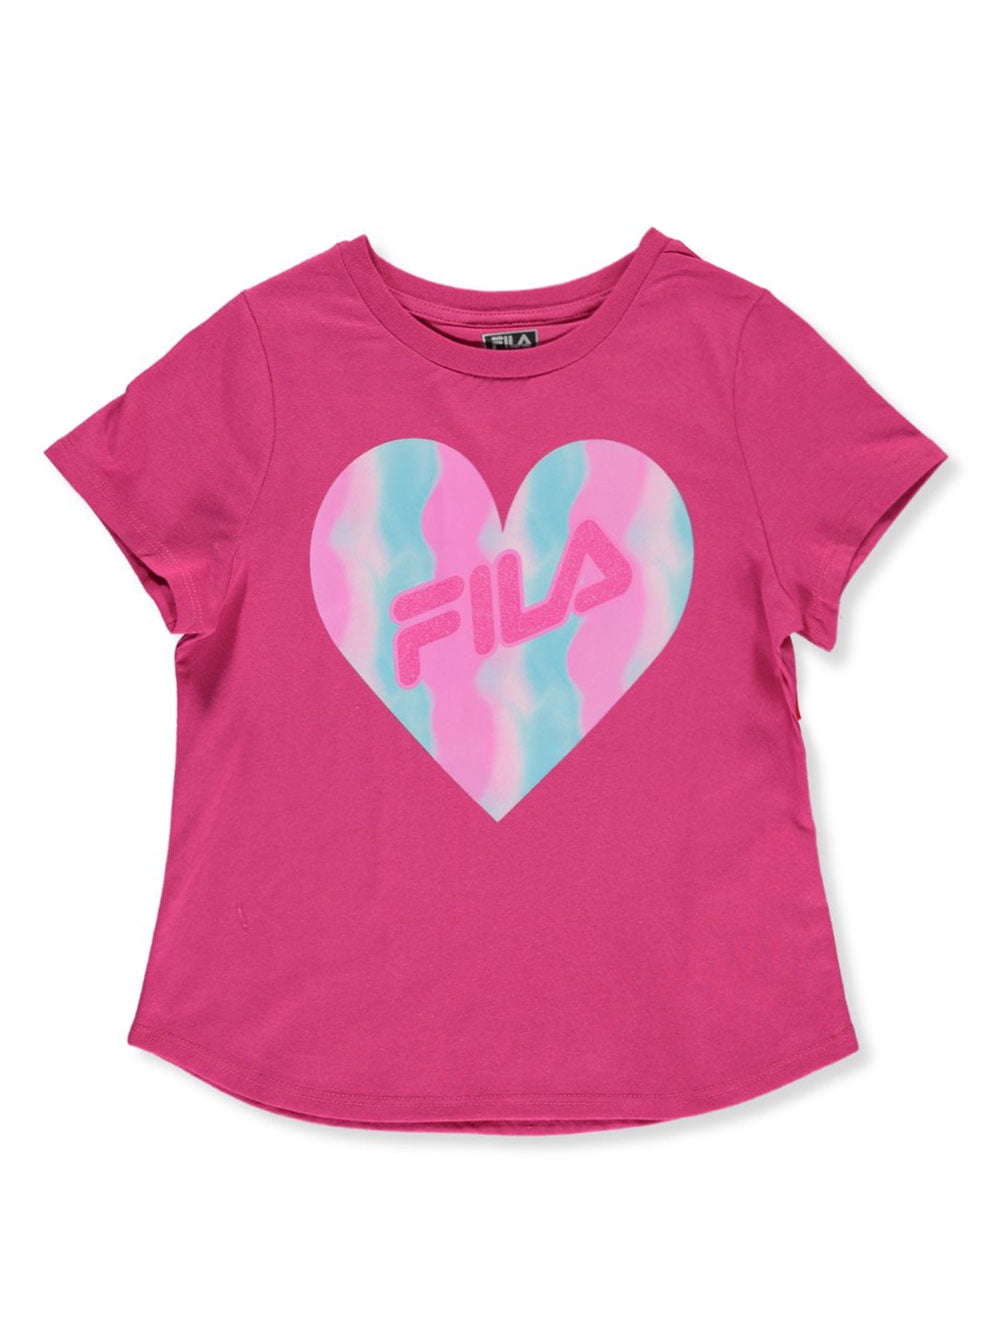 Fila Girls' Glitter Heart T-Shirt Girls) - Walmart.com